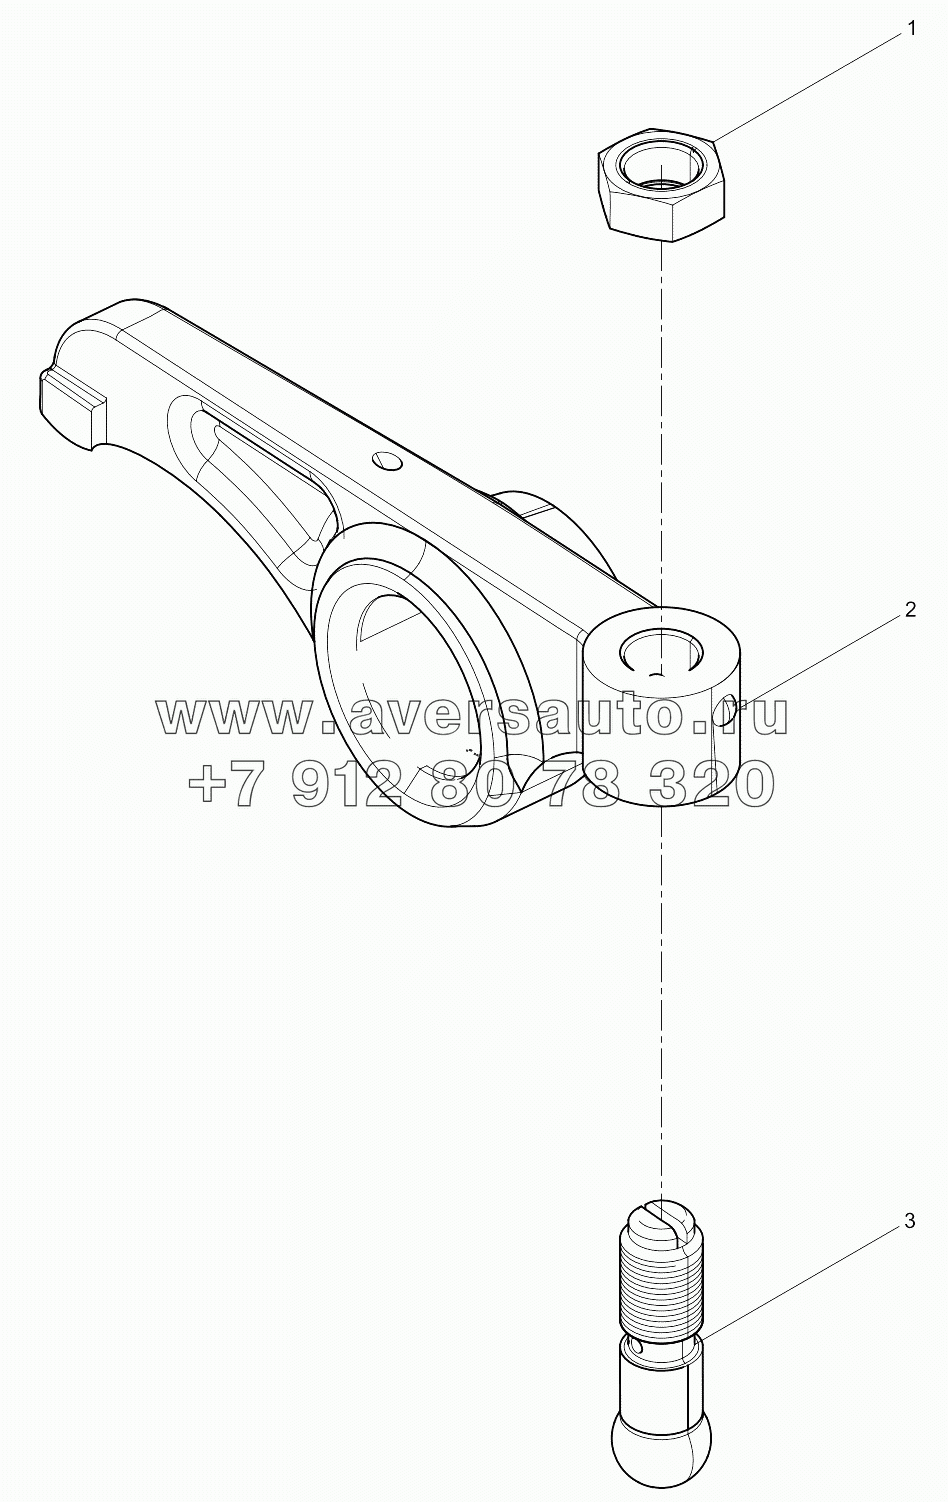  Intake valve rocker arm